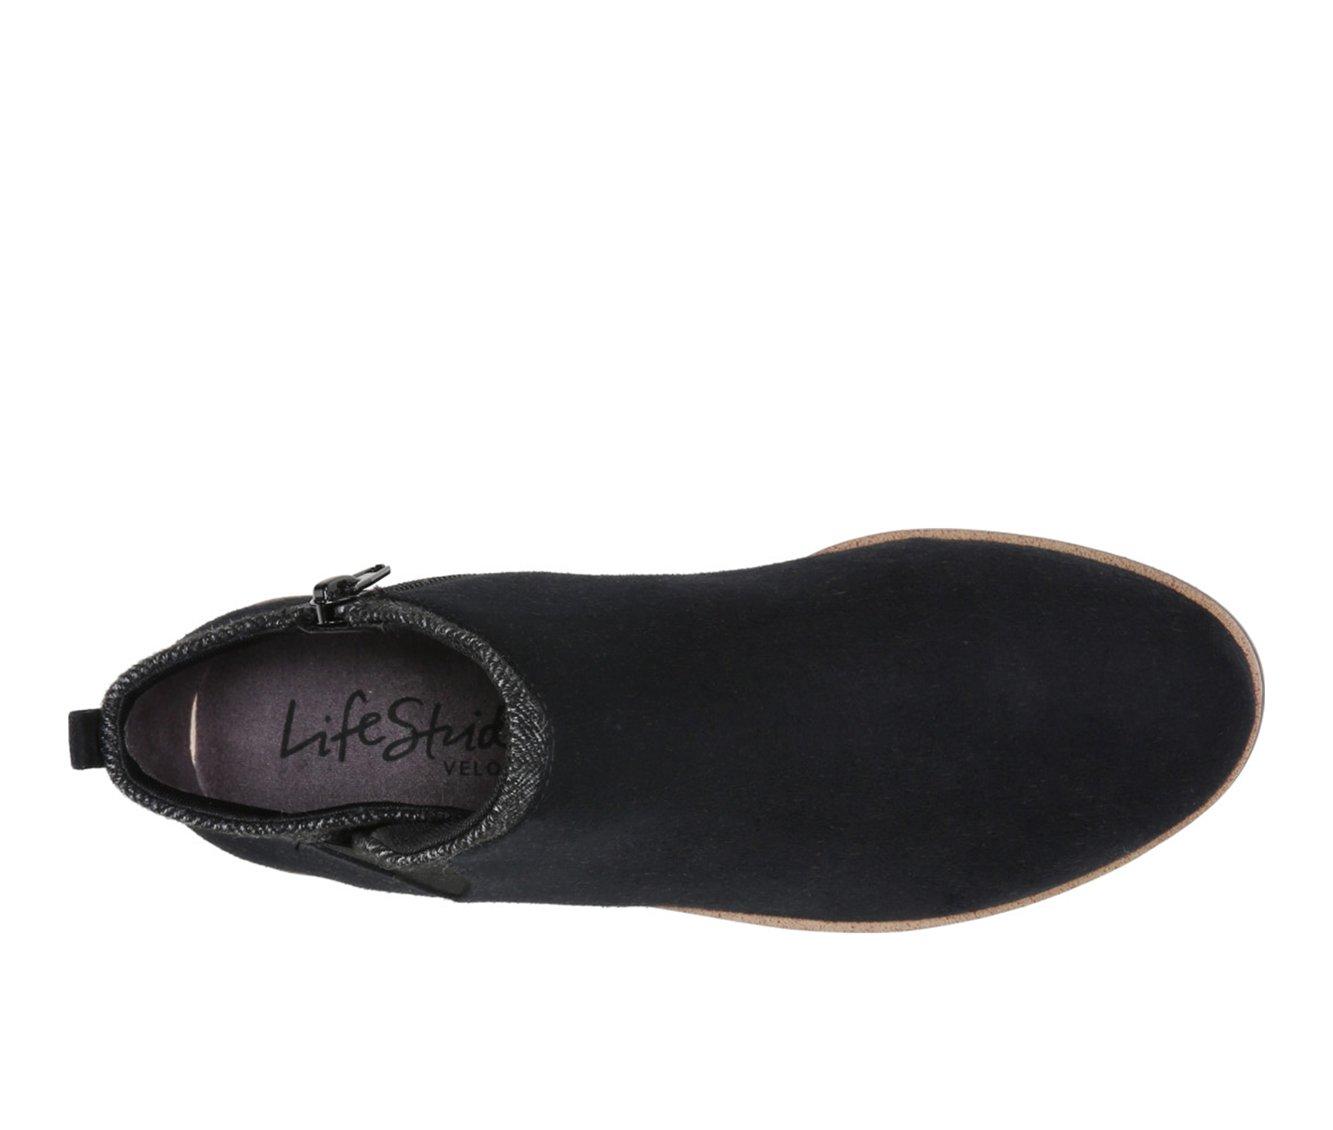 Women's LifeStride Zion Sneaker Boots